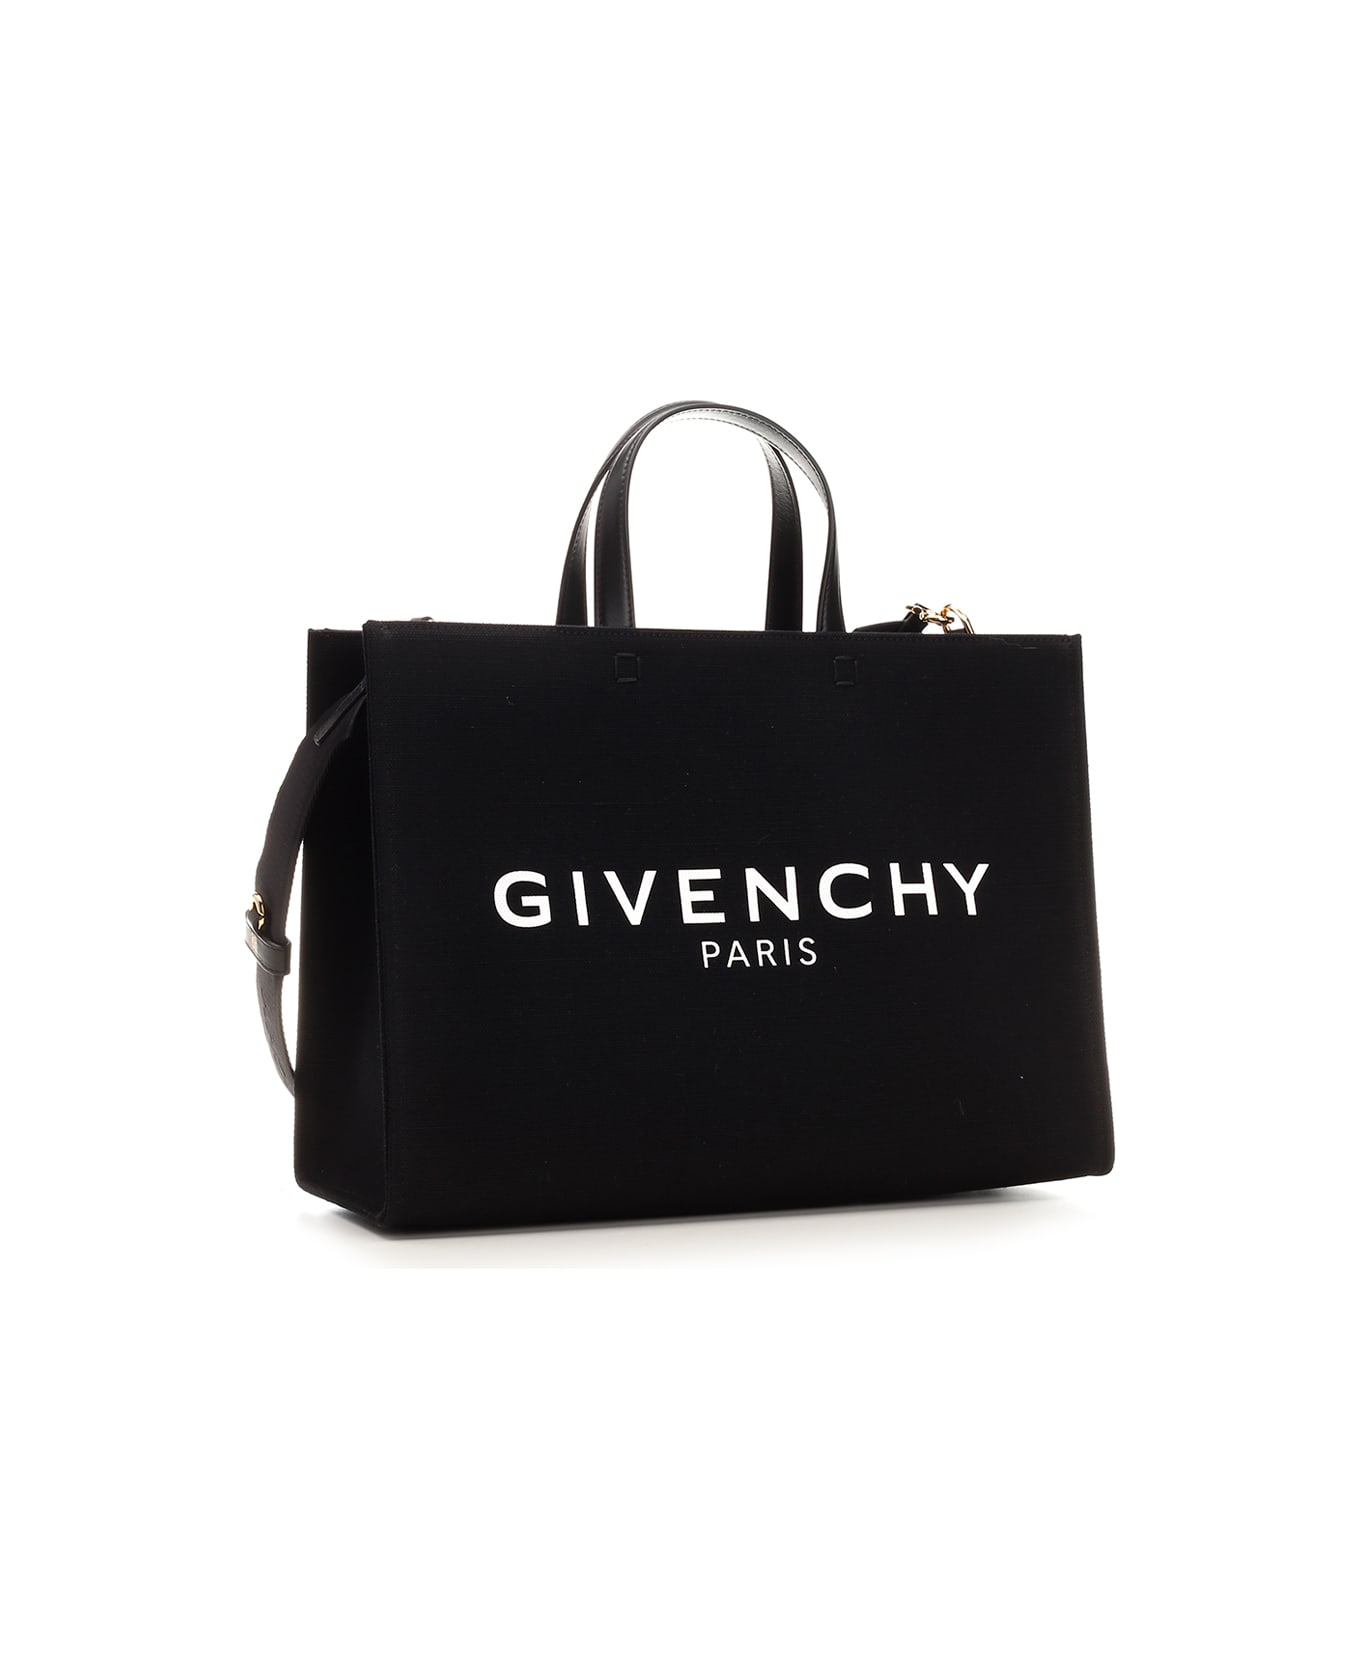 Givenchy 'g' Medium Tote - Black